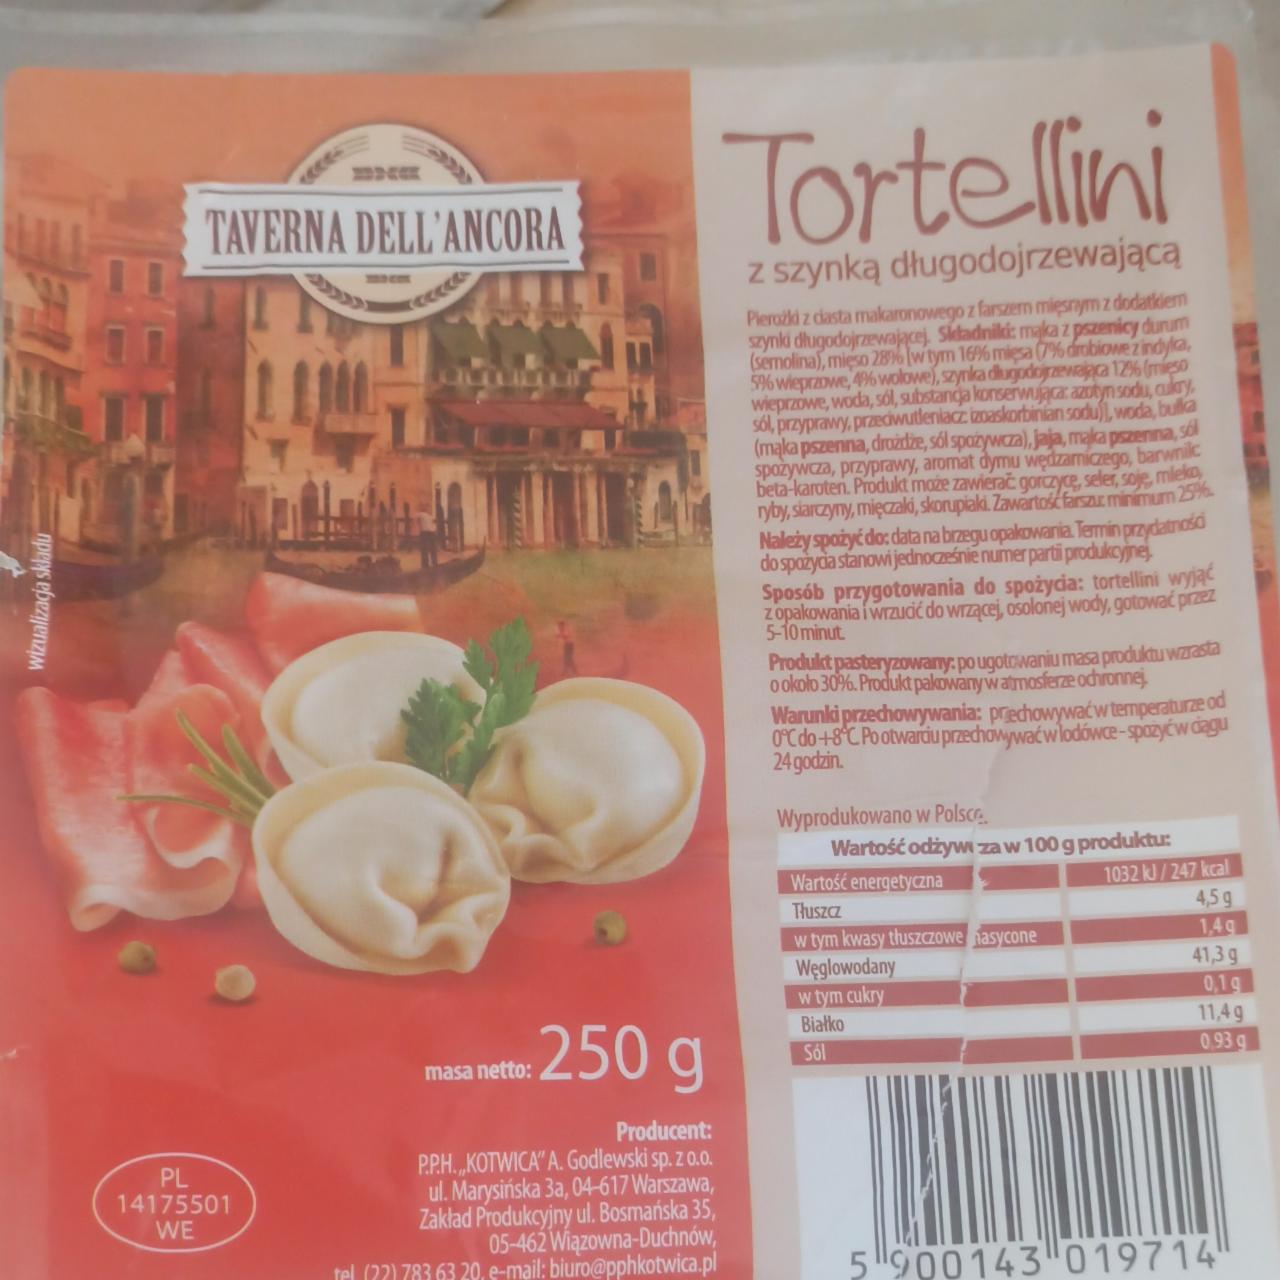 Zdjęcia - tortellini z szynką długodojrzewającą Taverna dell'ancora